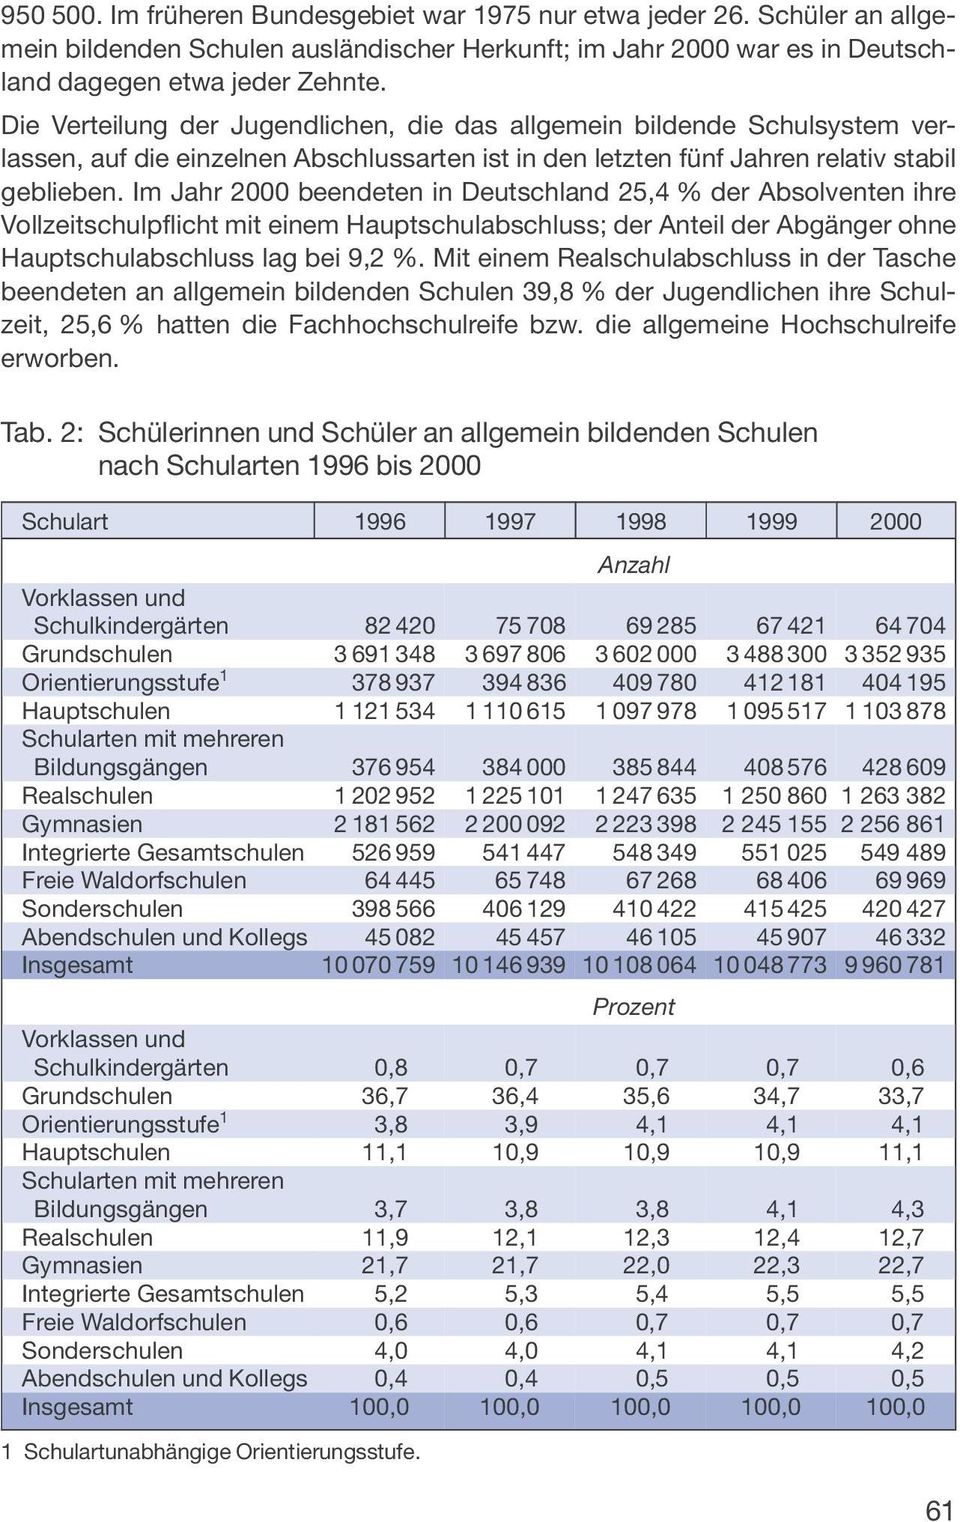 Im Jahr 2000 beendeten in Deutschland 25,4 % der Absolventen ihre Vollzeitschulpflicht mit einem Hauptschulabschluss; der Anteil der Abgänger ohne Hauptschulabschluss lag bei 9,2 %.